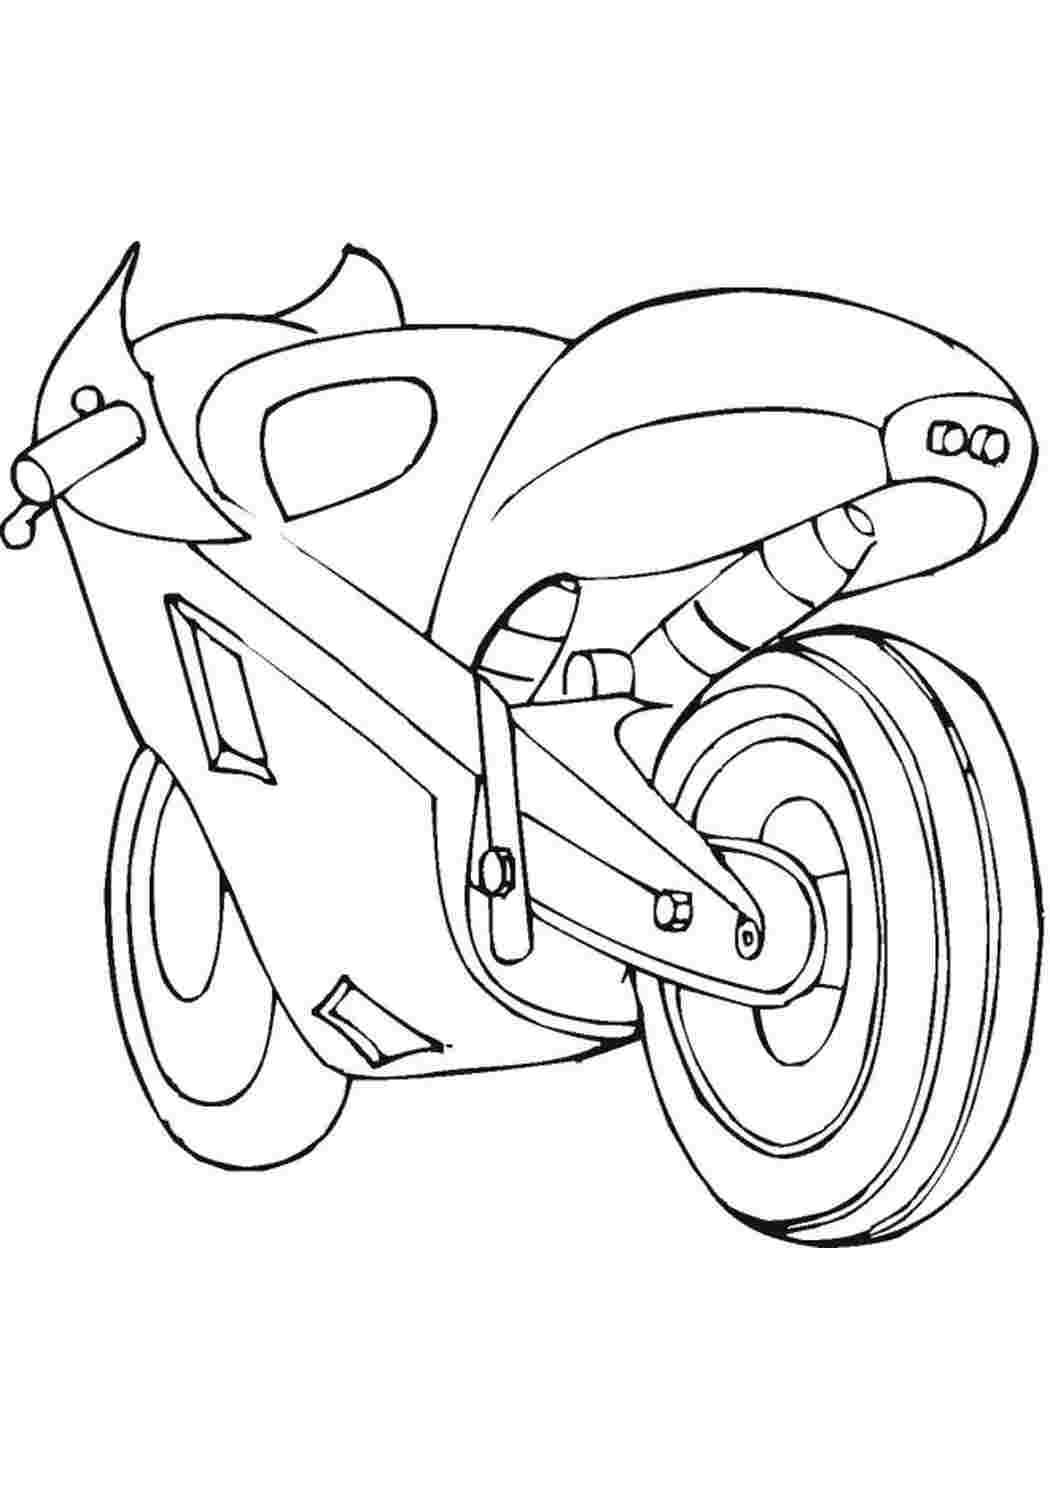 Раскраски раскраски для мальчиков раскраска мотоцикл. Скачать раскраски. раскраски для мальчиков раскраска мотоцикл. Распечатать раскраски на сайте.